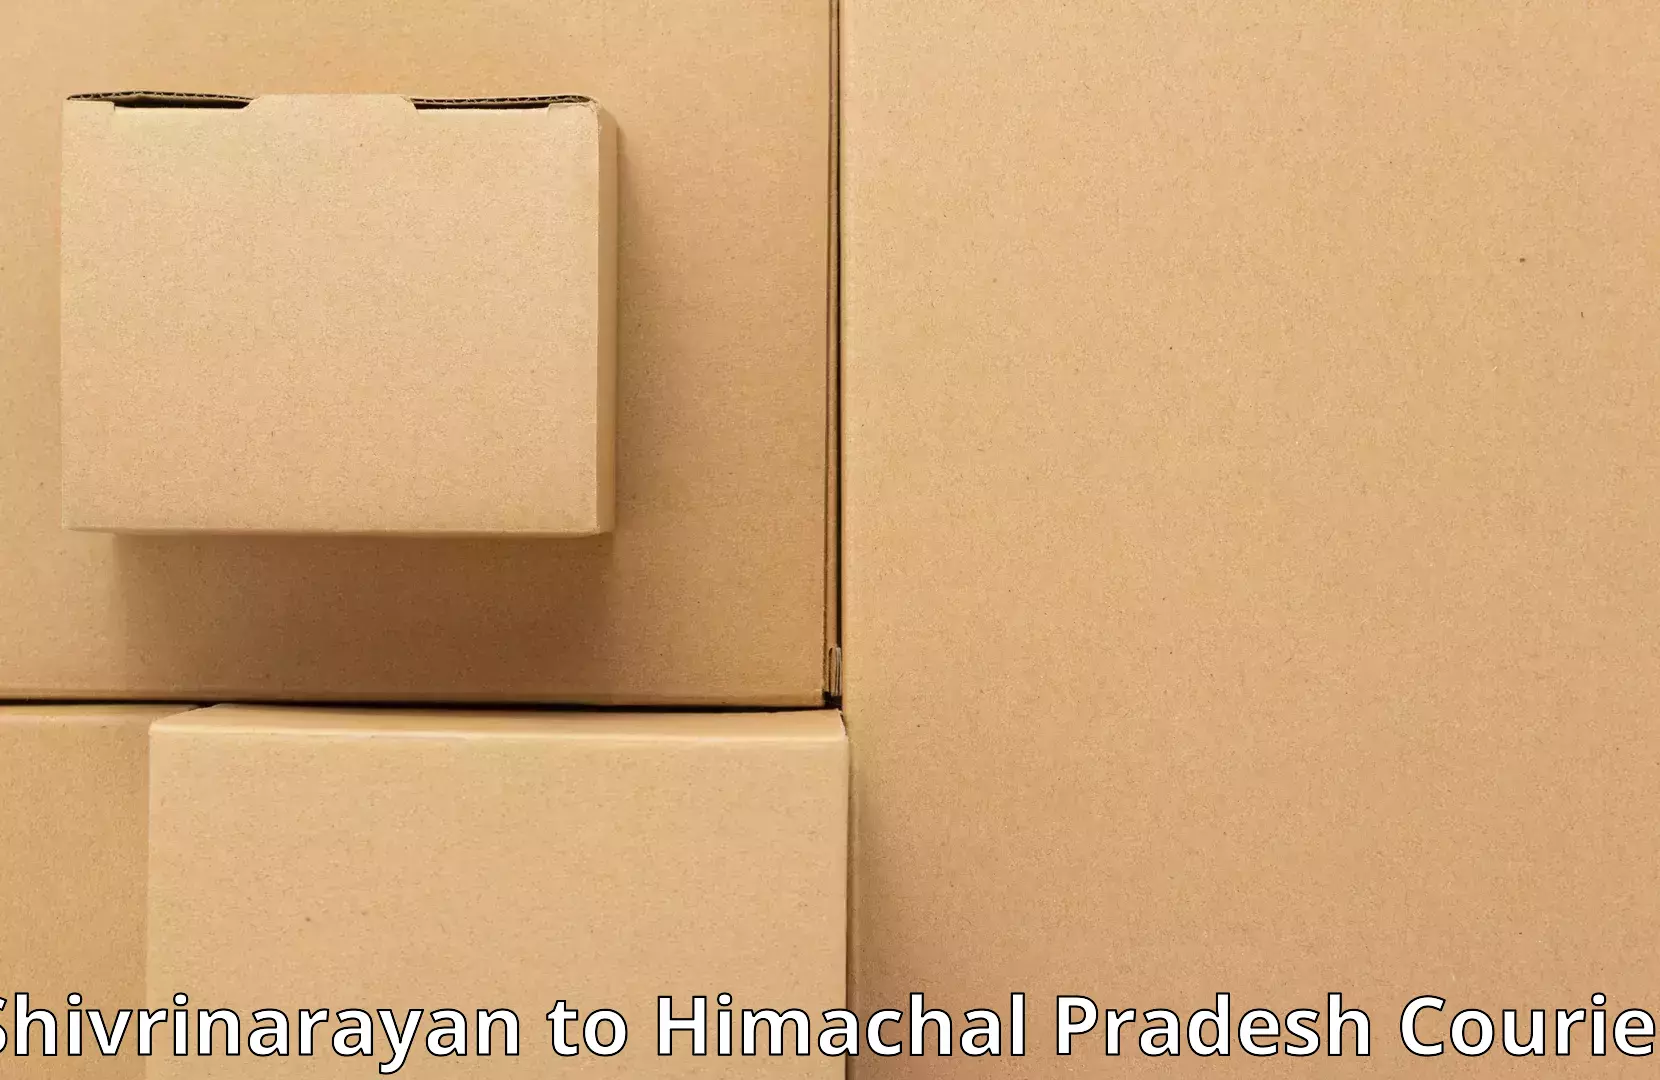 Home furniture relocation Shivrinarayan to Baijnath